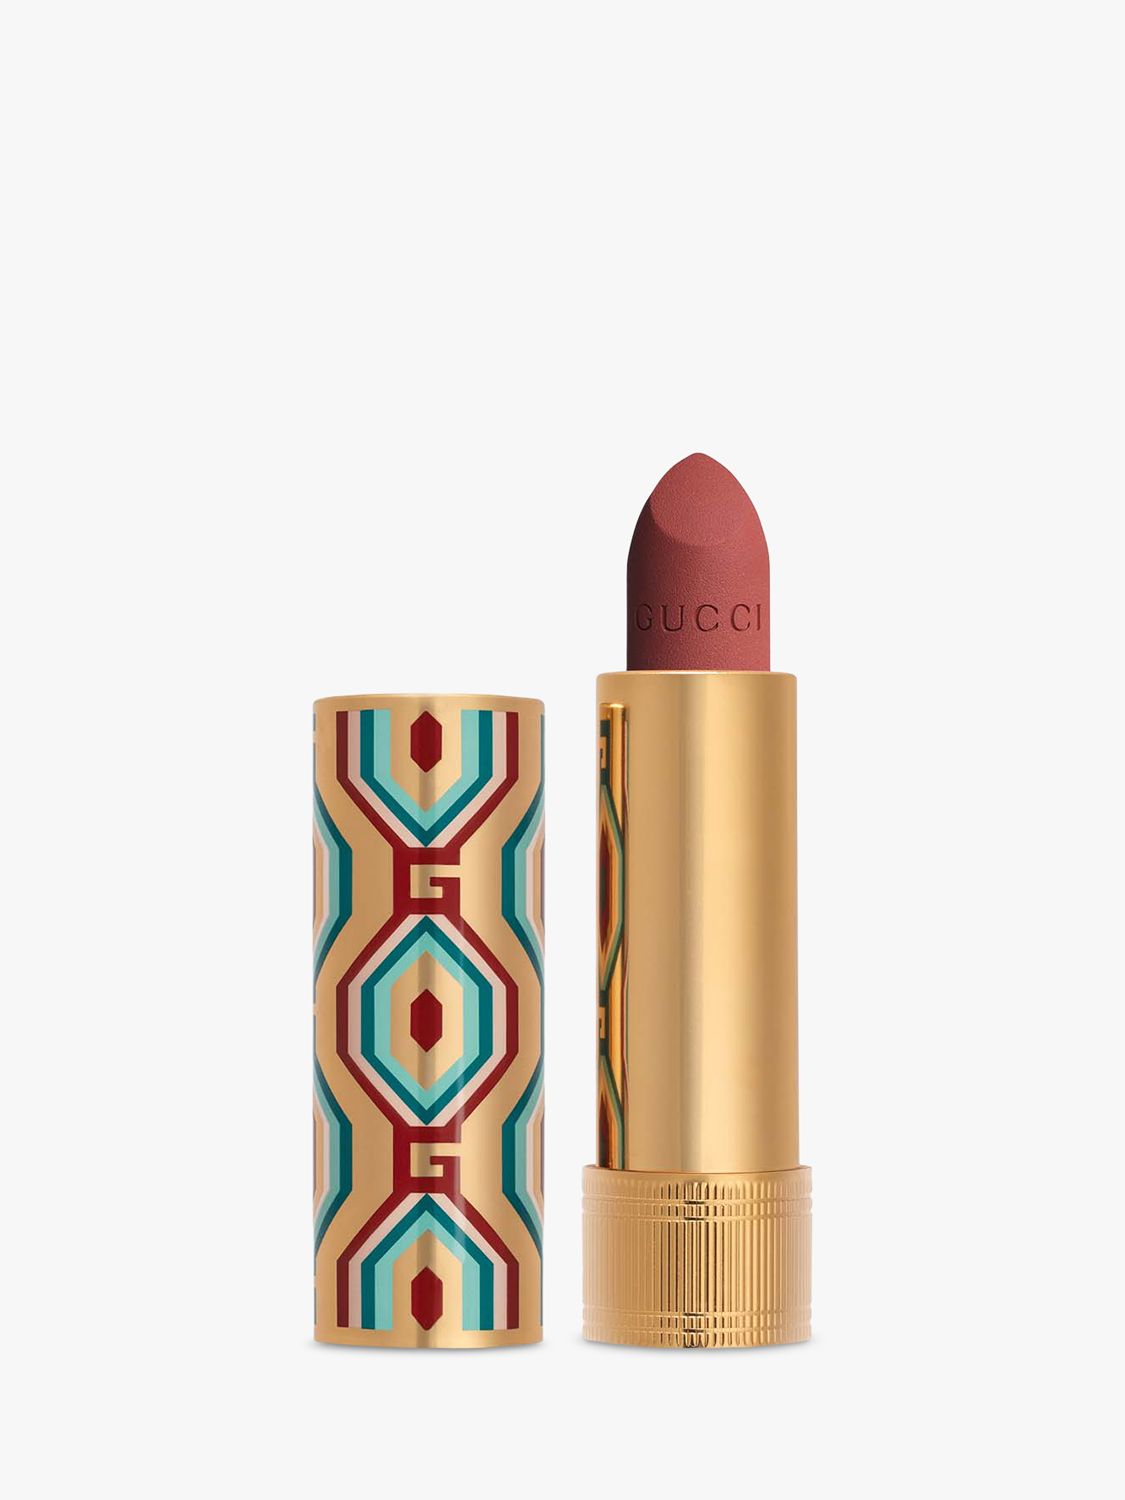 Gucci Rouge à Lèvres Matte Lipstick Limited Edition, 208 Argentina 1